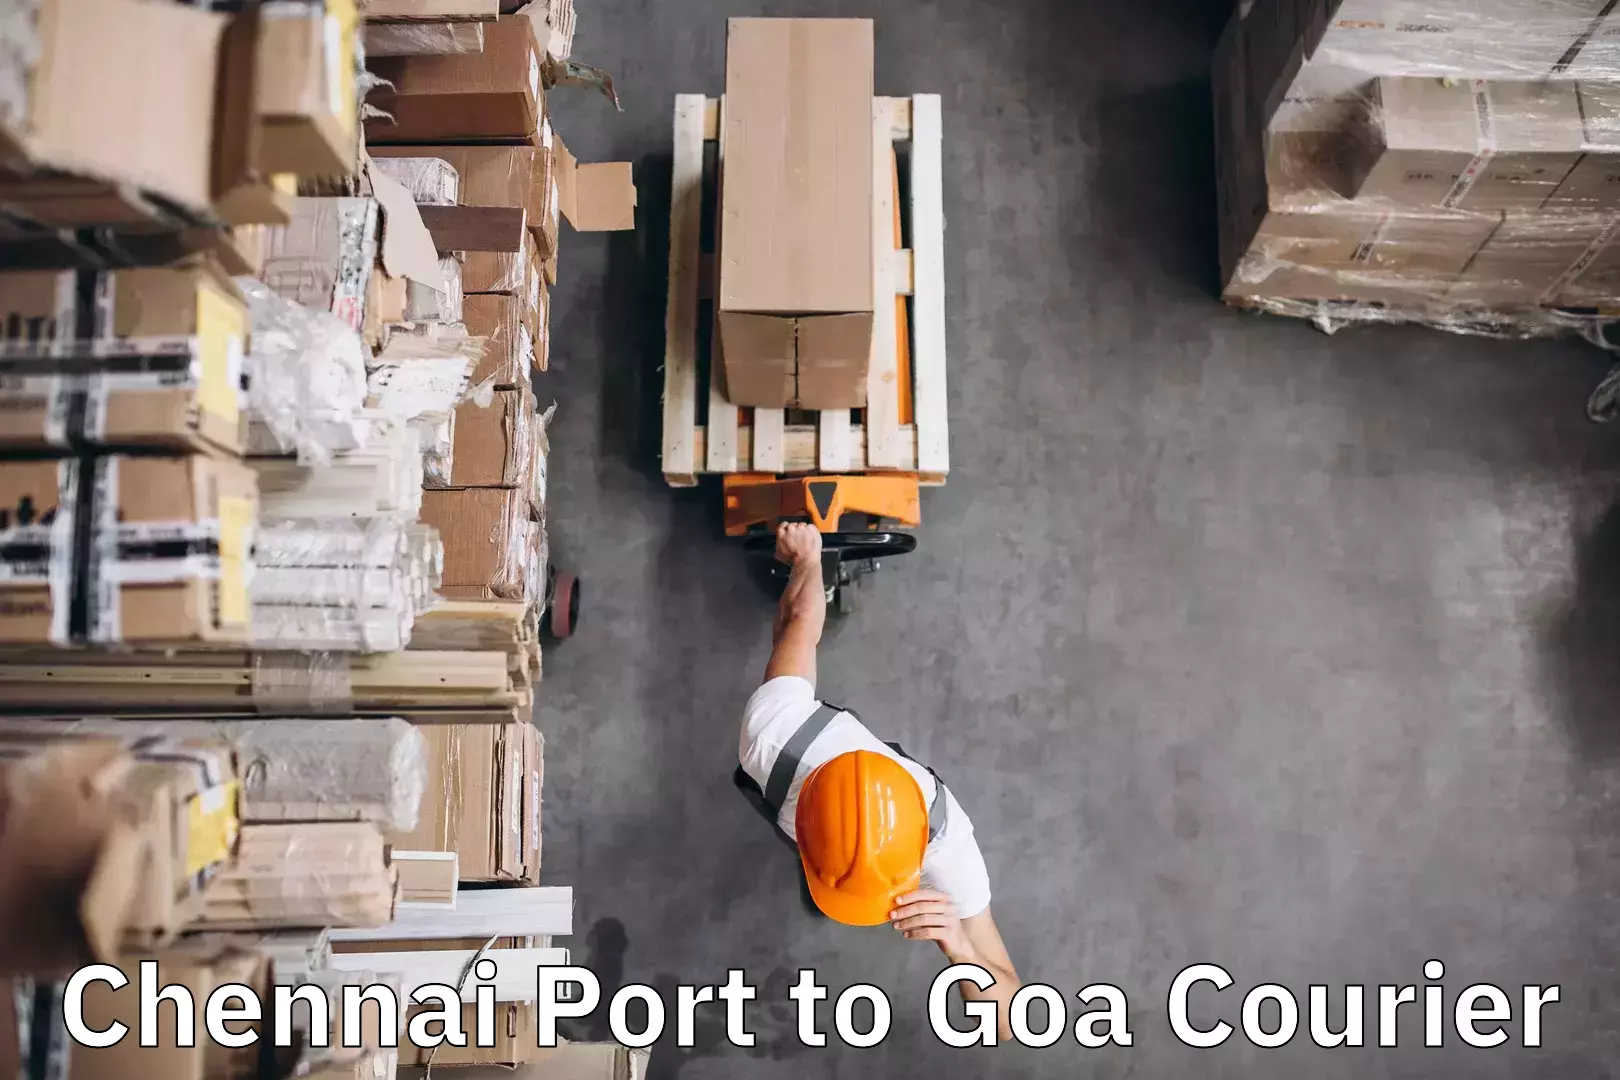 Door-to-door baggage service Chennai Port to Goa University